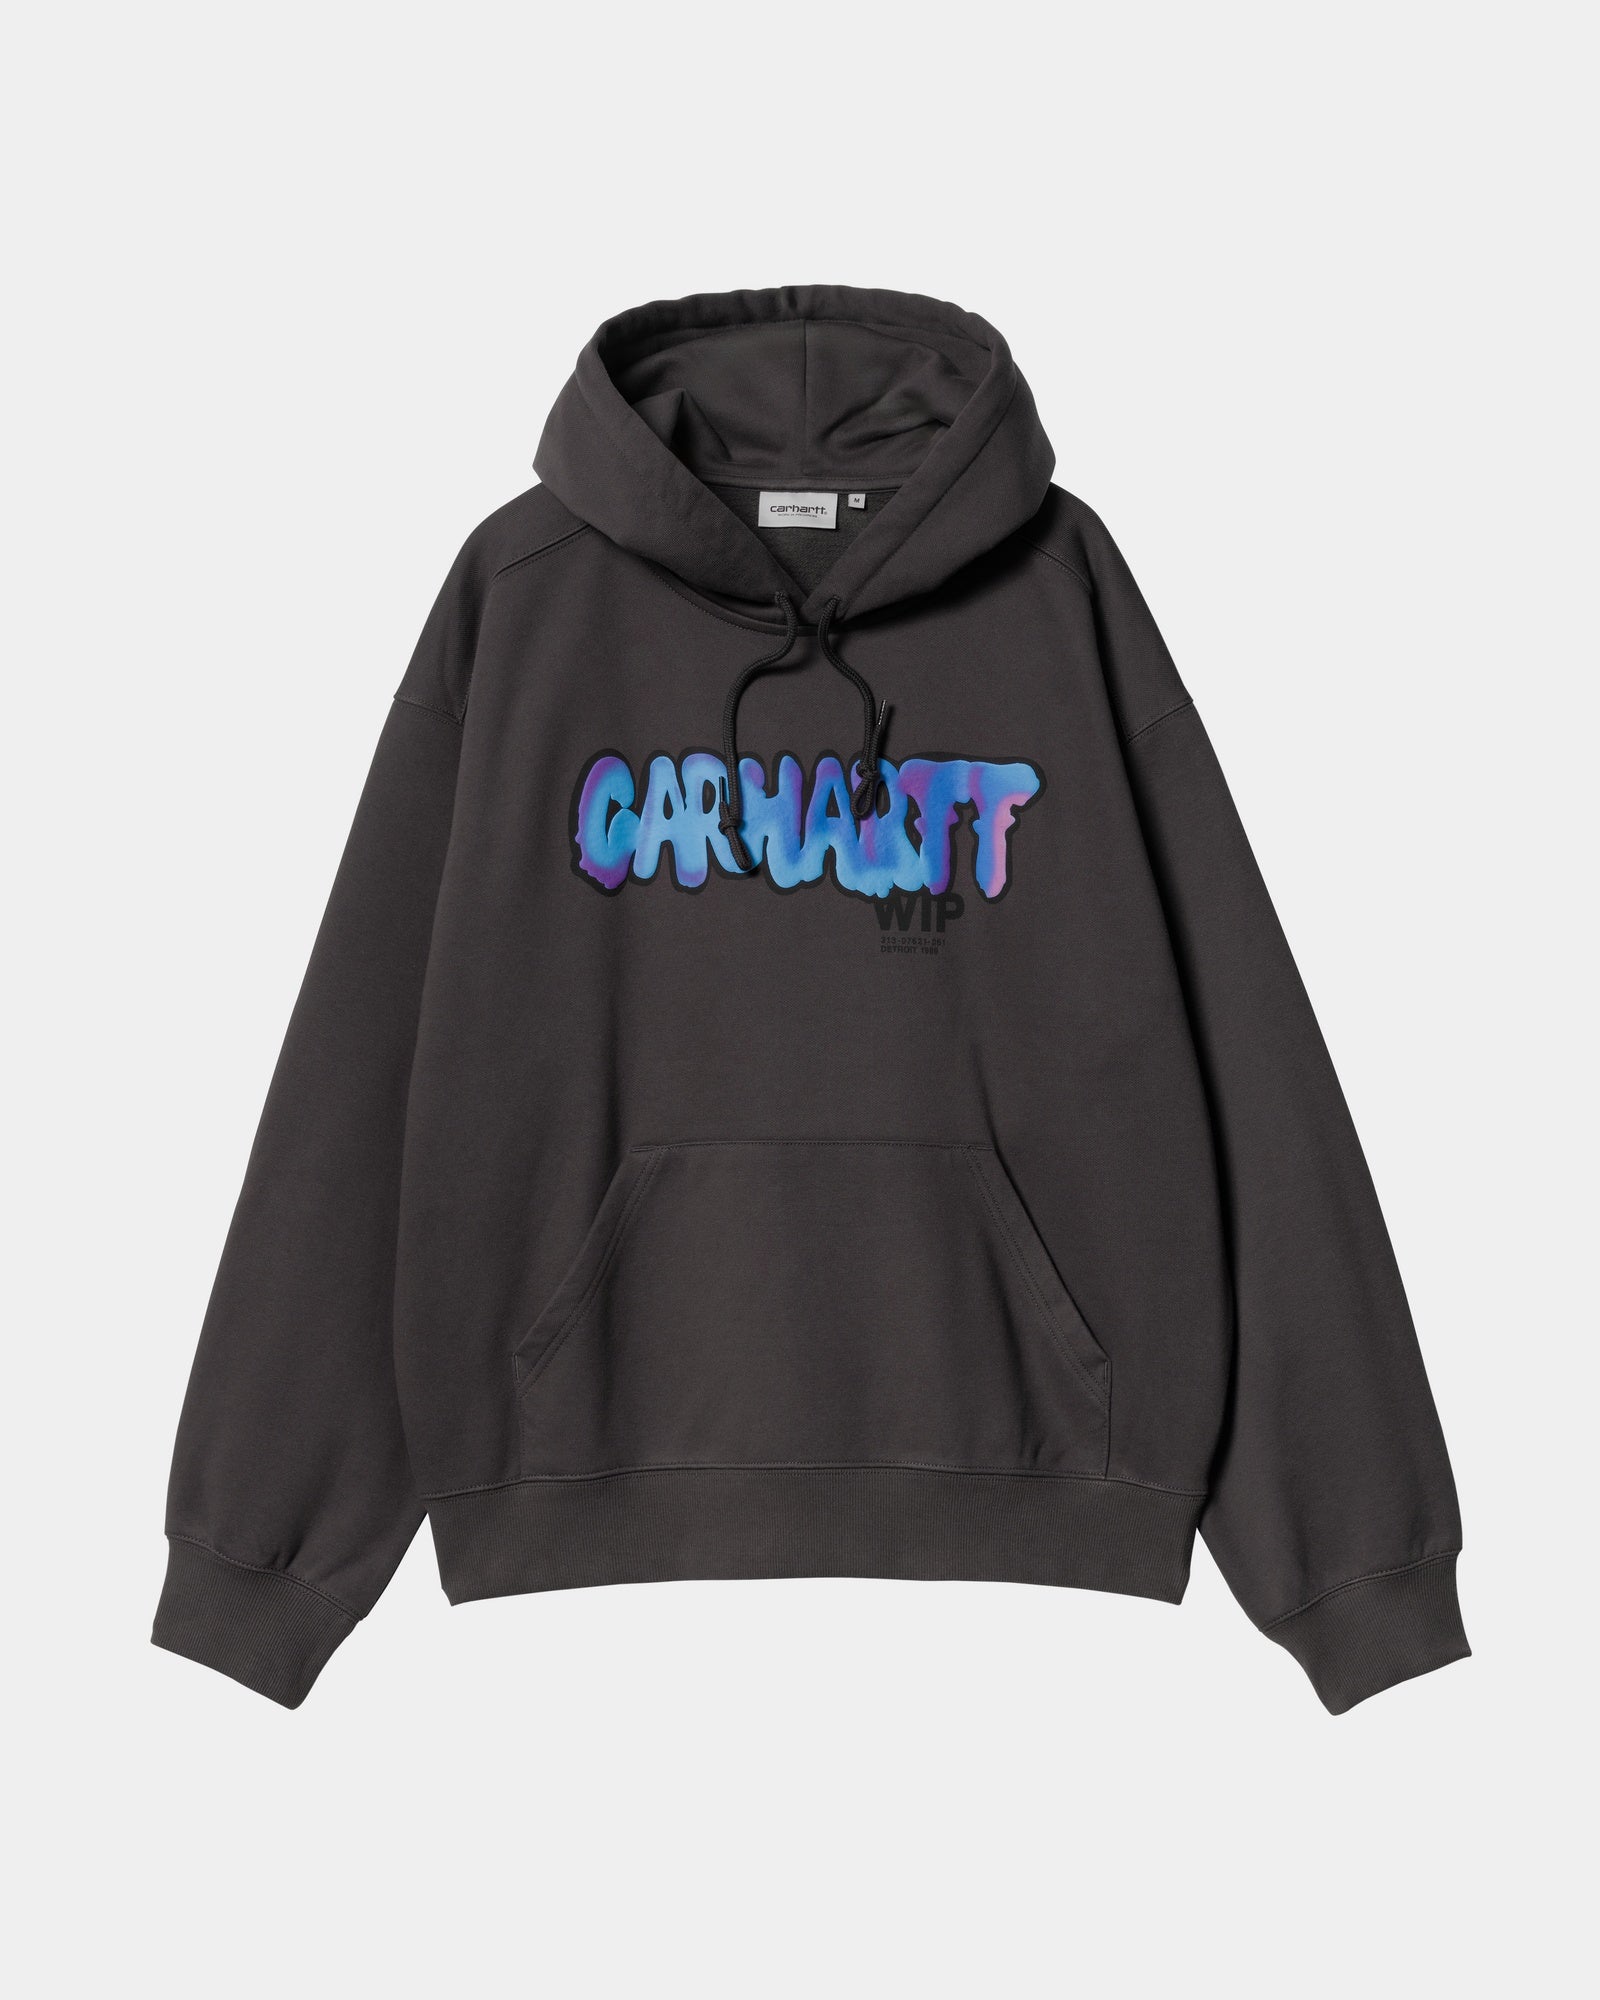 칼하트WIP Carhartt Hooded Drip Sweatshirt,Charcoal